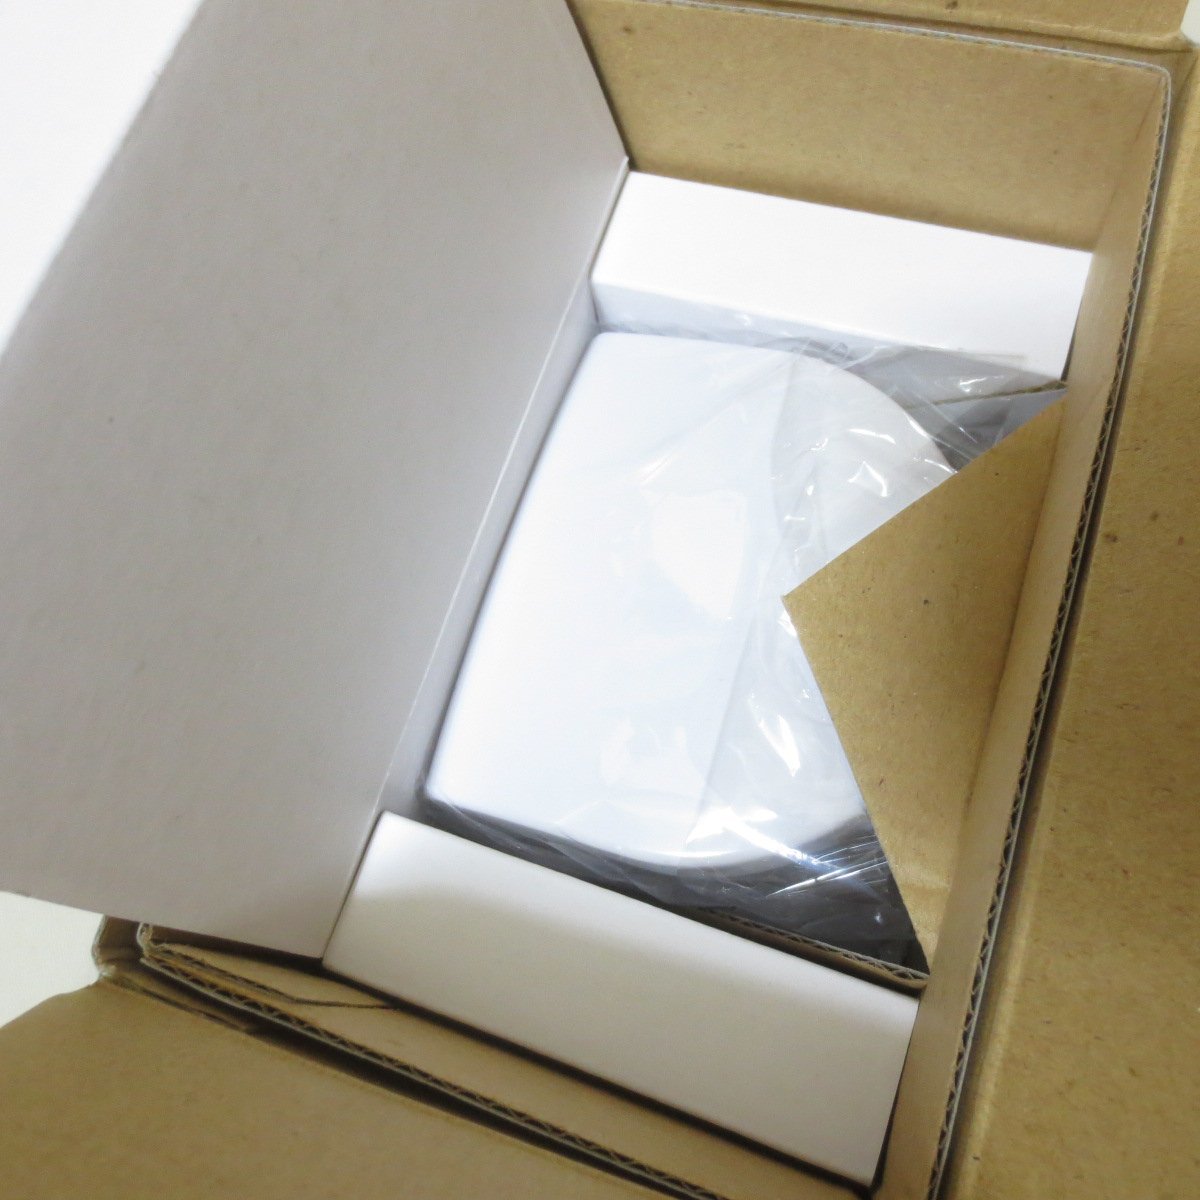 U480 мойка очиститель устранение бактерий box продажа комплектом аксессуары очки [ включение в покупку ×]